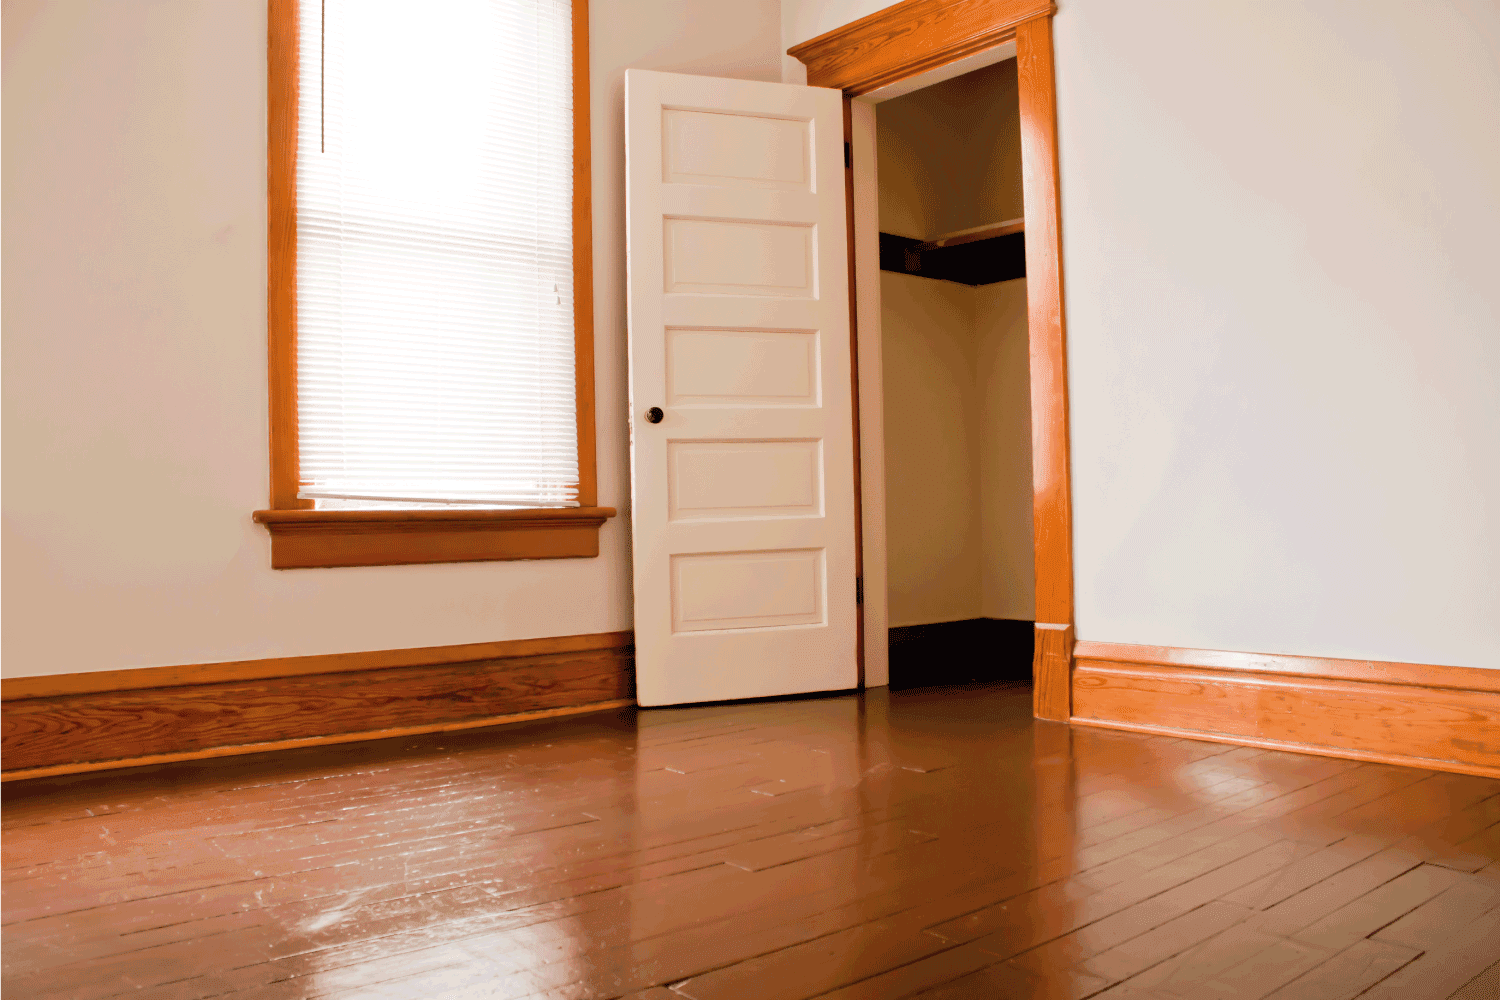 empty room with flush flooring and door jamb